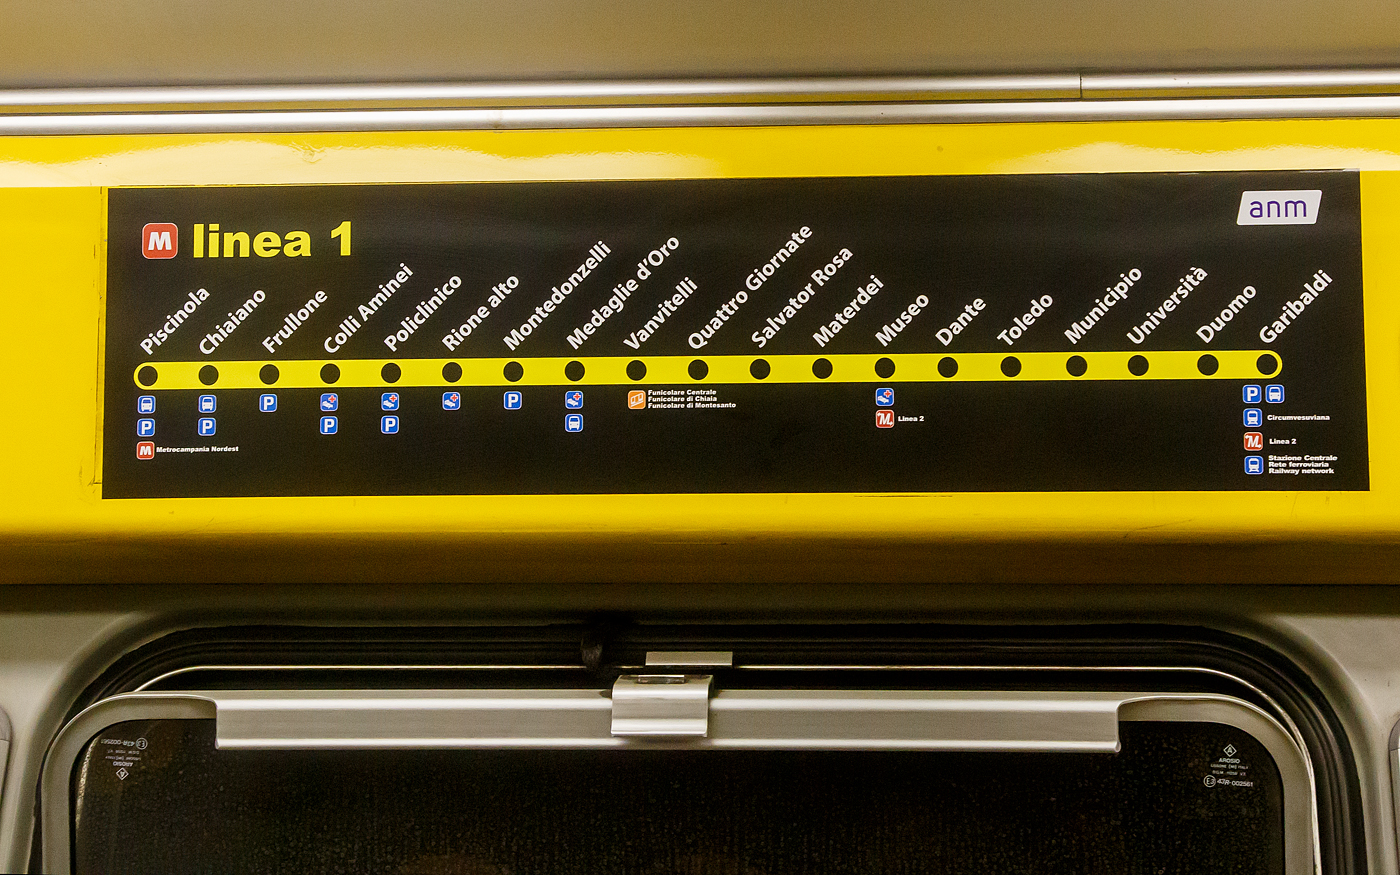 Hier sieht man den derzeitigen Streckenverlauf der Linie 1 der U-Bahn Neapel (Linea 1 della Metropolitana di Napoli), hier am 15.07.2022 in einem Triebzug der ANM (Azienda Napoletana Mobilità) in Neapel.